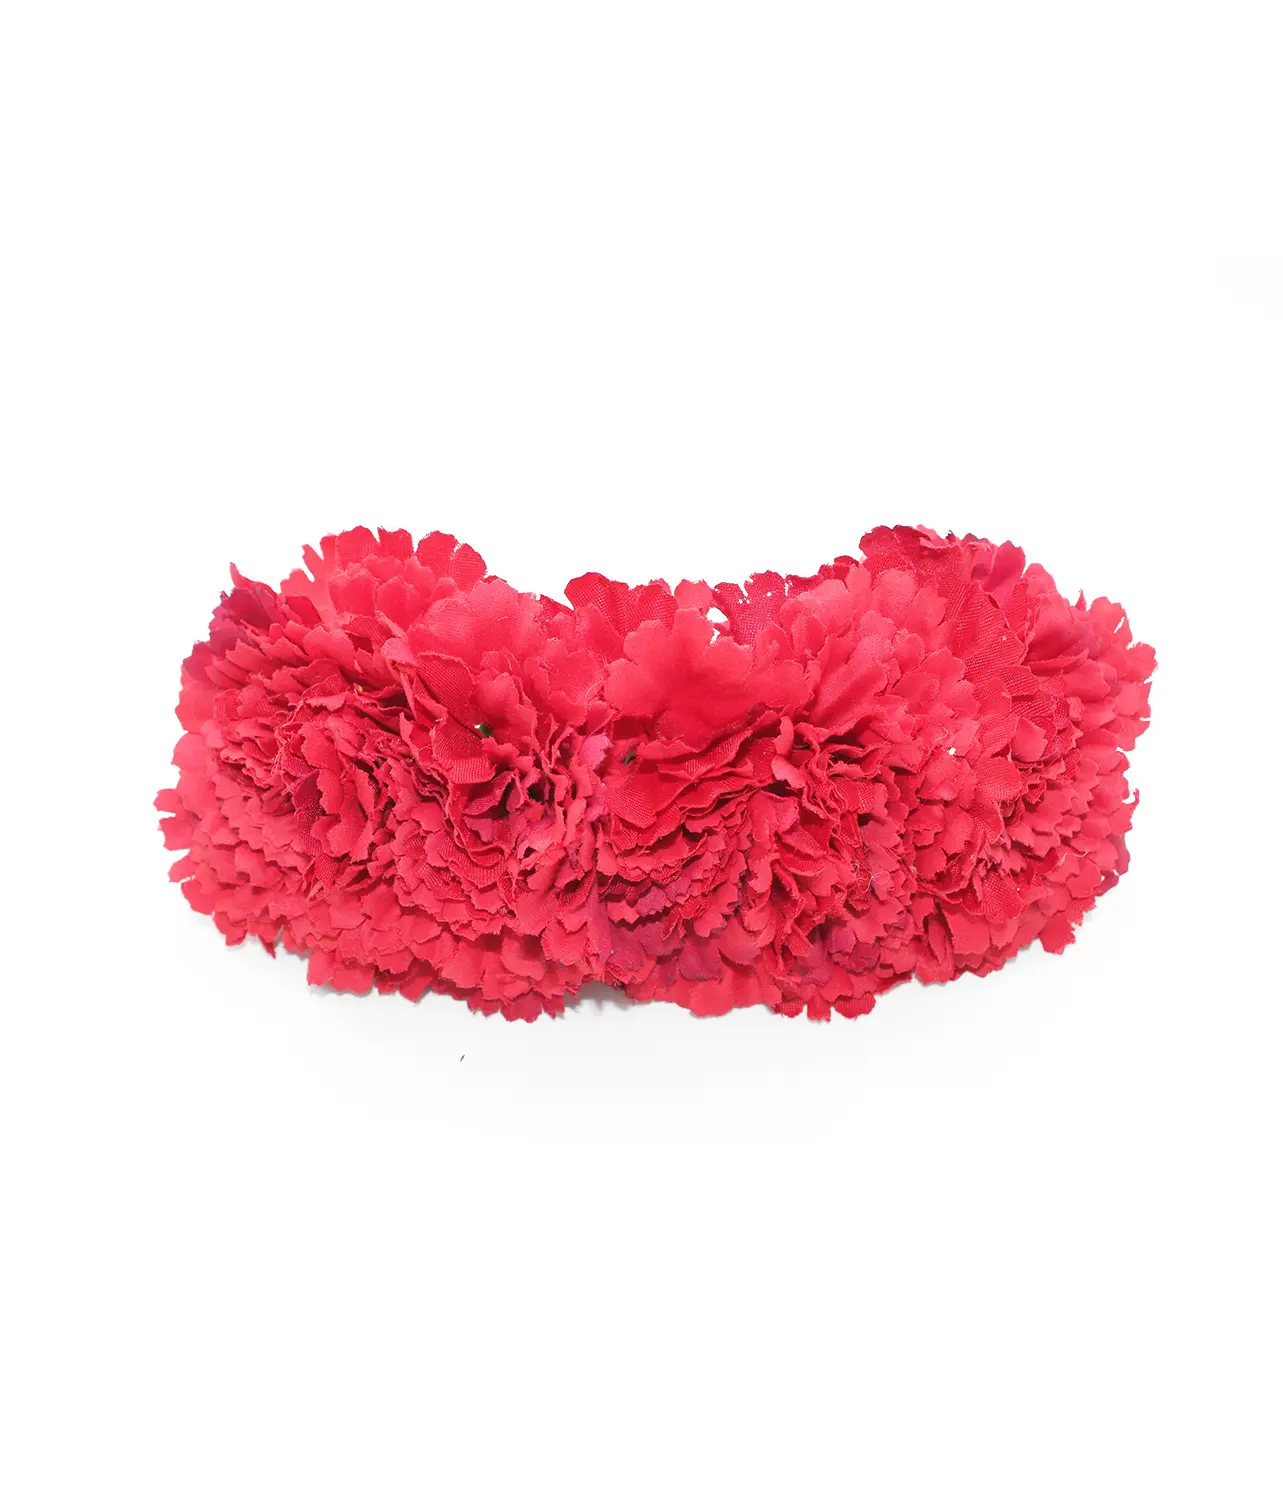 Corona de 5 claveles para vestirse de flamenca en color rojo. El complemento de flamenca que necesitas.